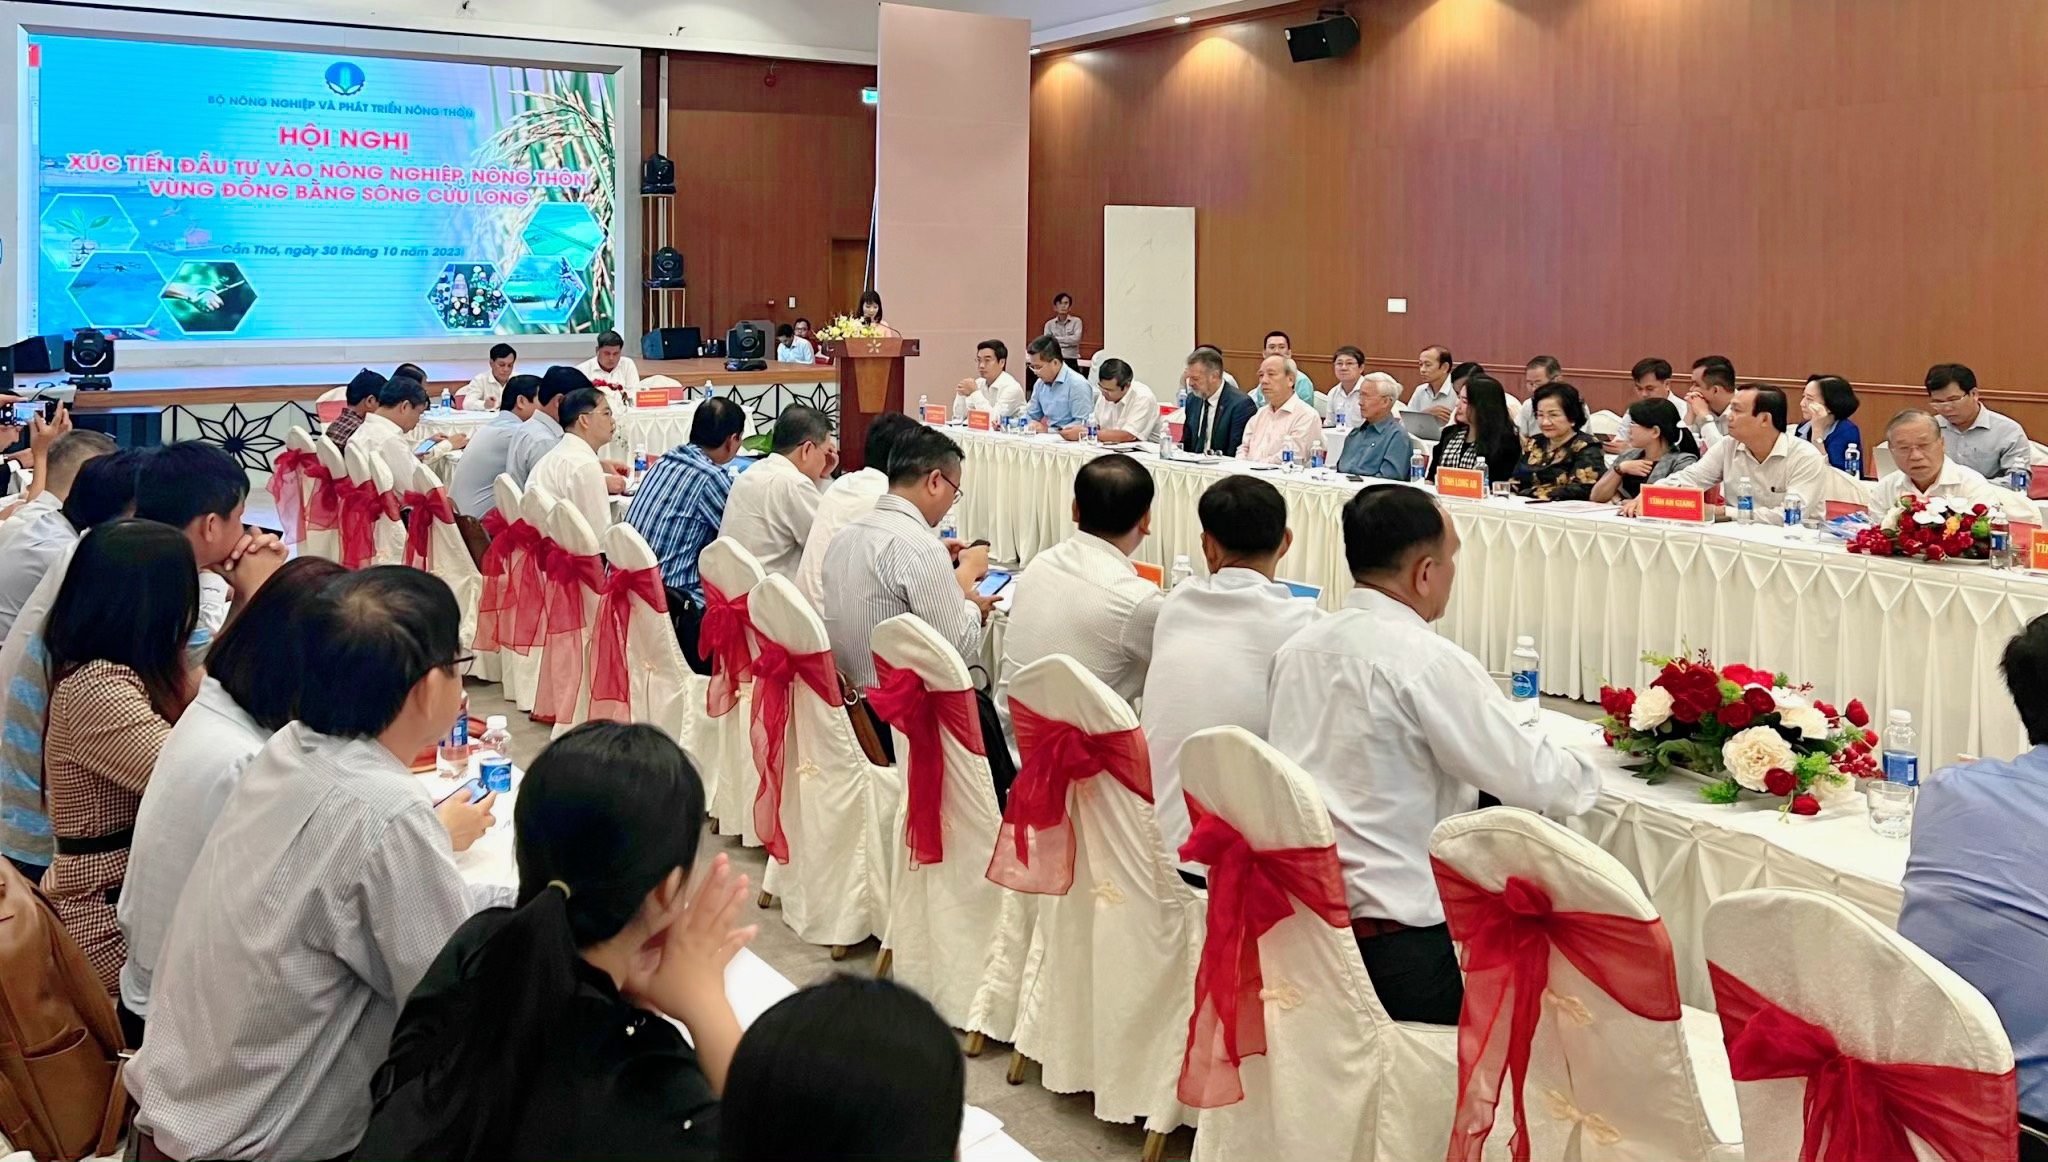 Hội nghị xúc tiến đầu tư vào nông nghiệp, nông thôn vùng Đồng bằng Sông Cửu Long tại Cần Thơ.